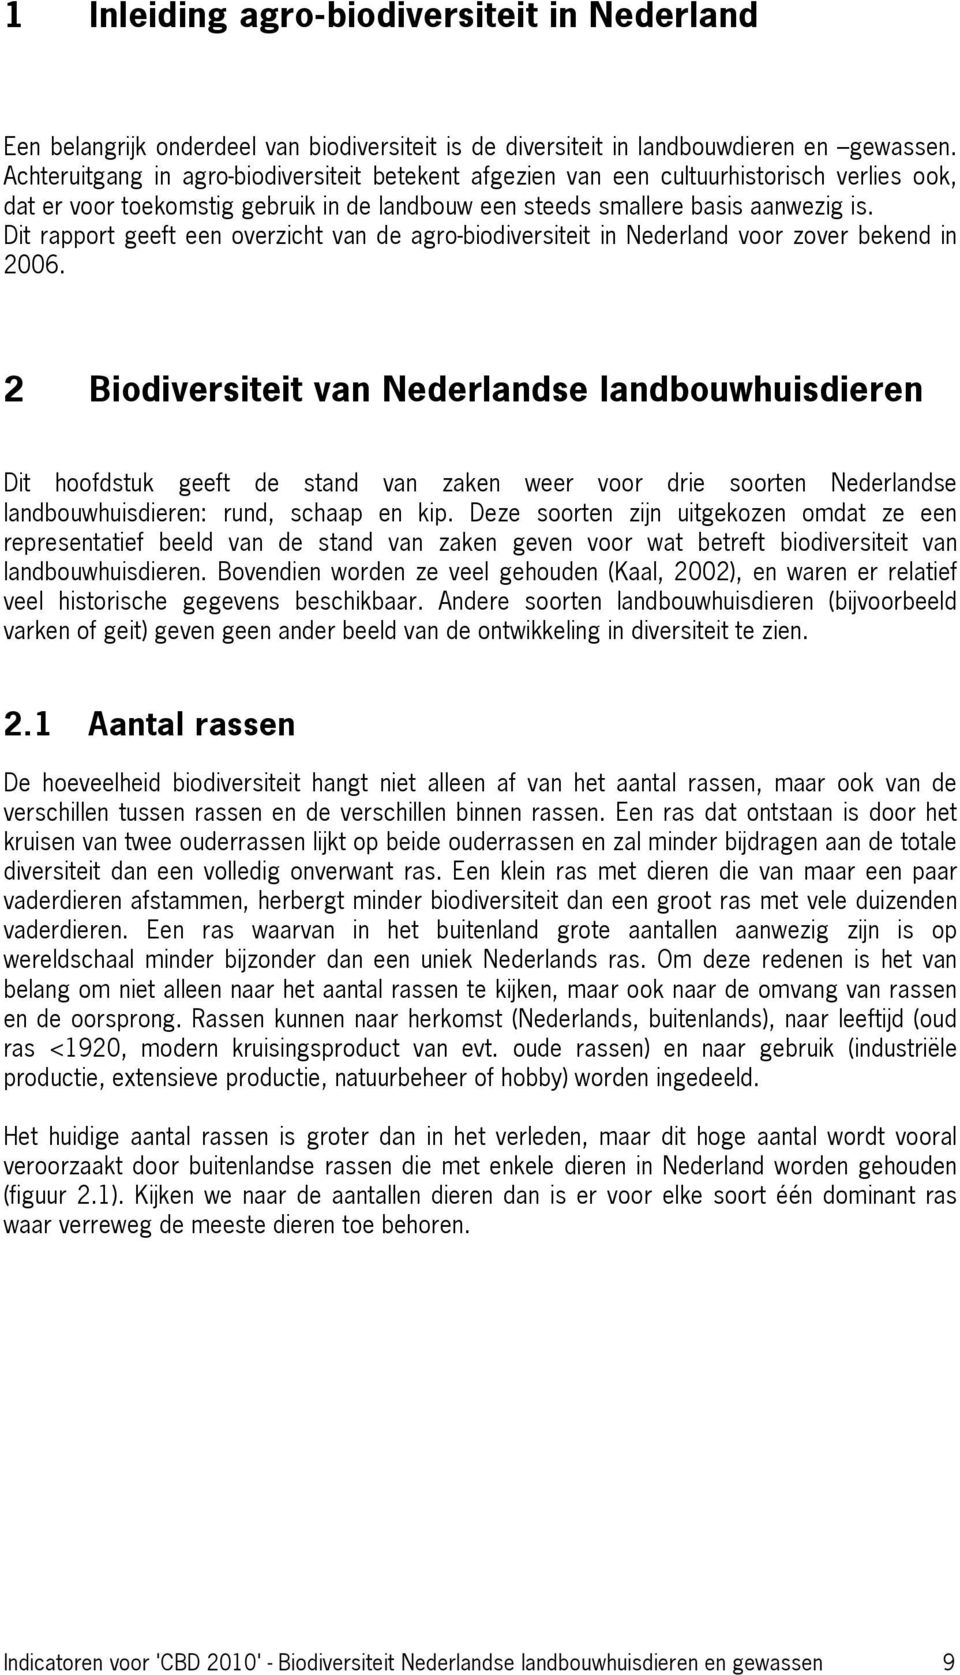 Dit rapport geeft een overzicht van de agro-biodiversiteit in Nederland voor zover bekend in 2006.